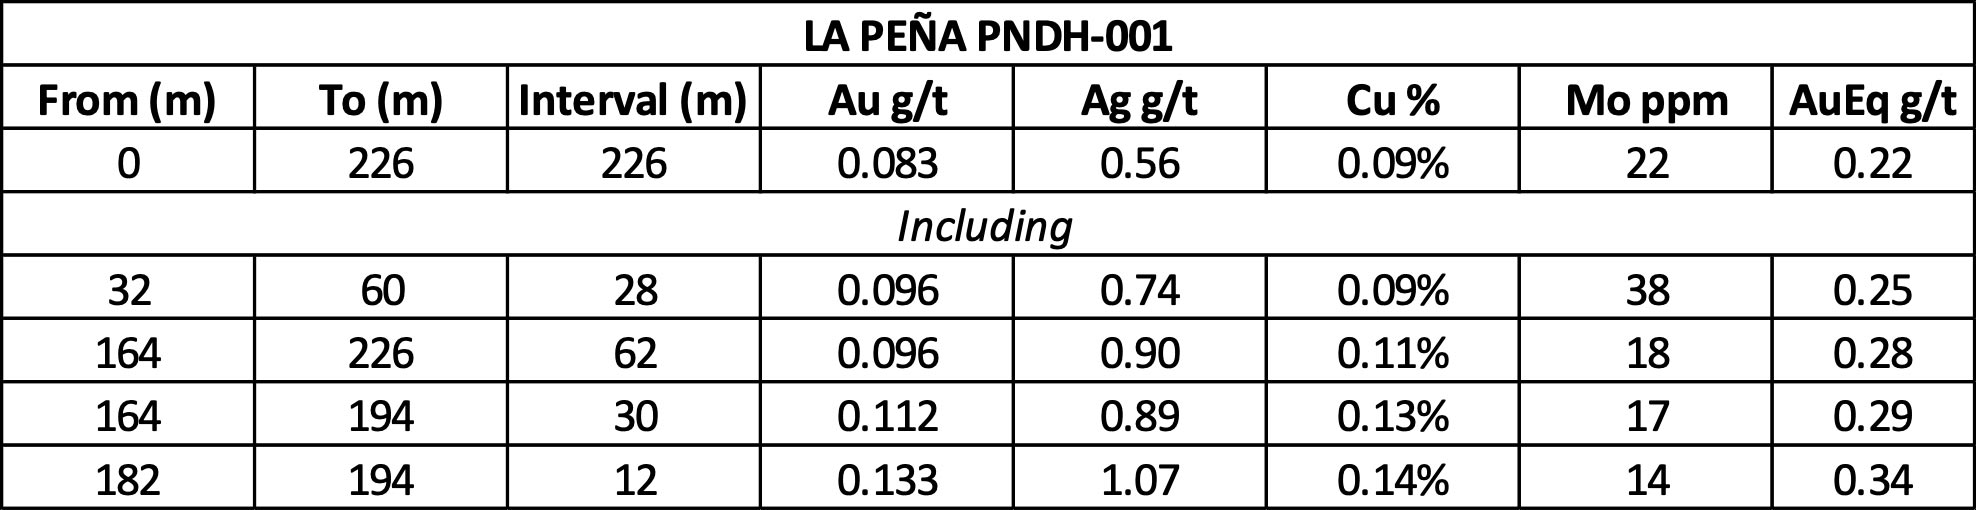 PNDH001 La Peña Drill Results